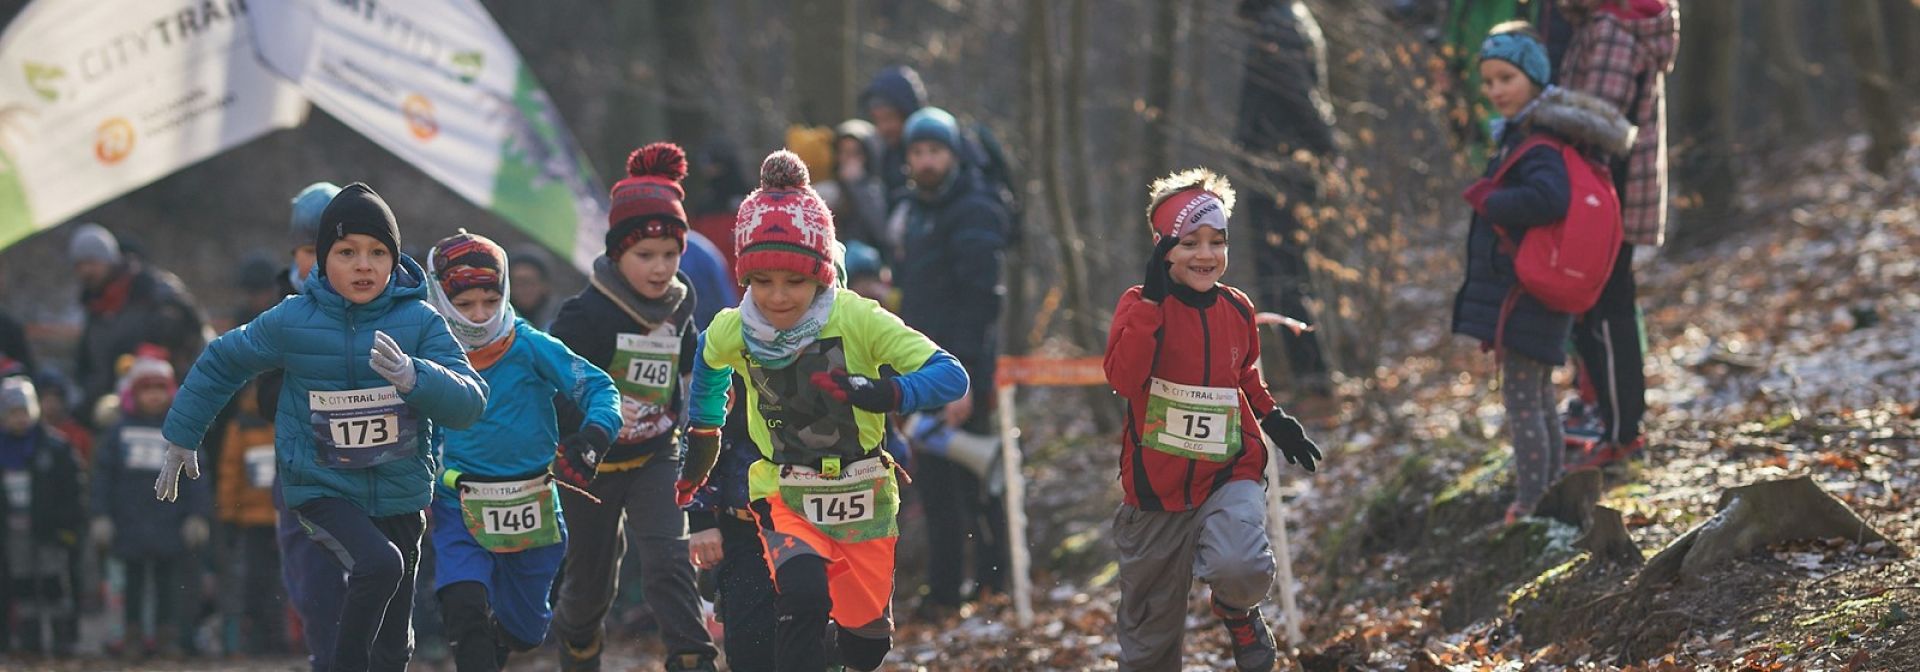 Dzieci biegnące w lesie 